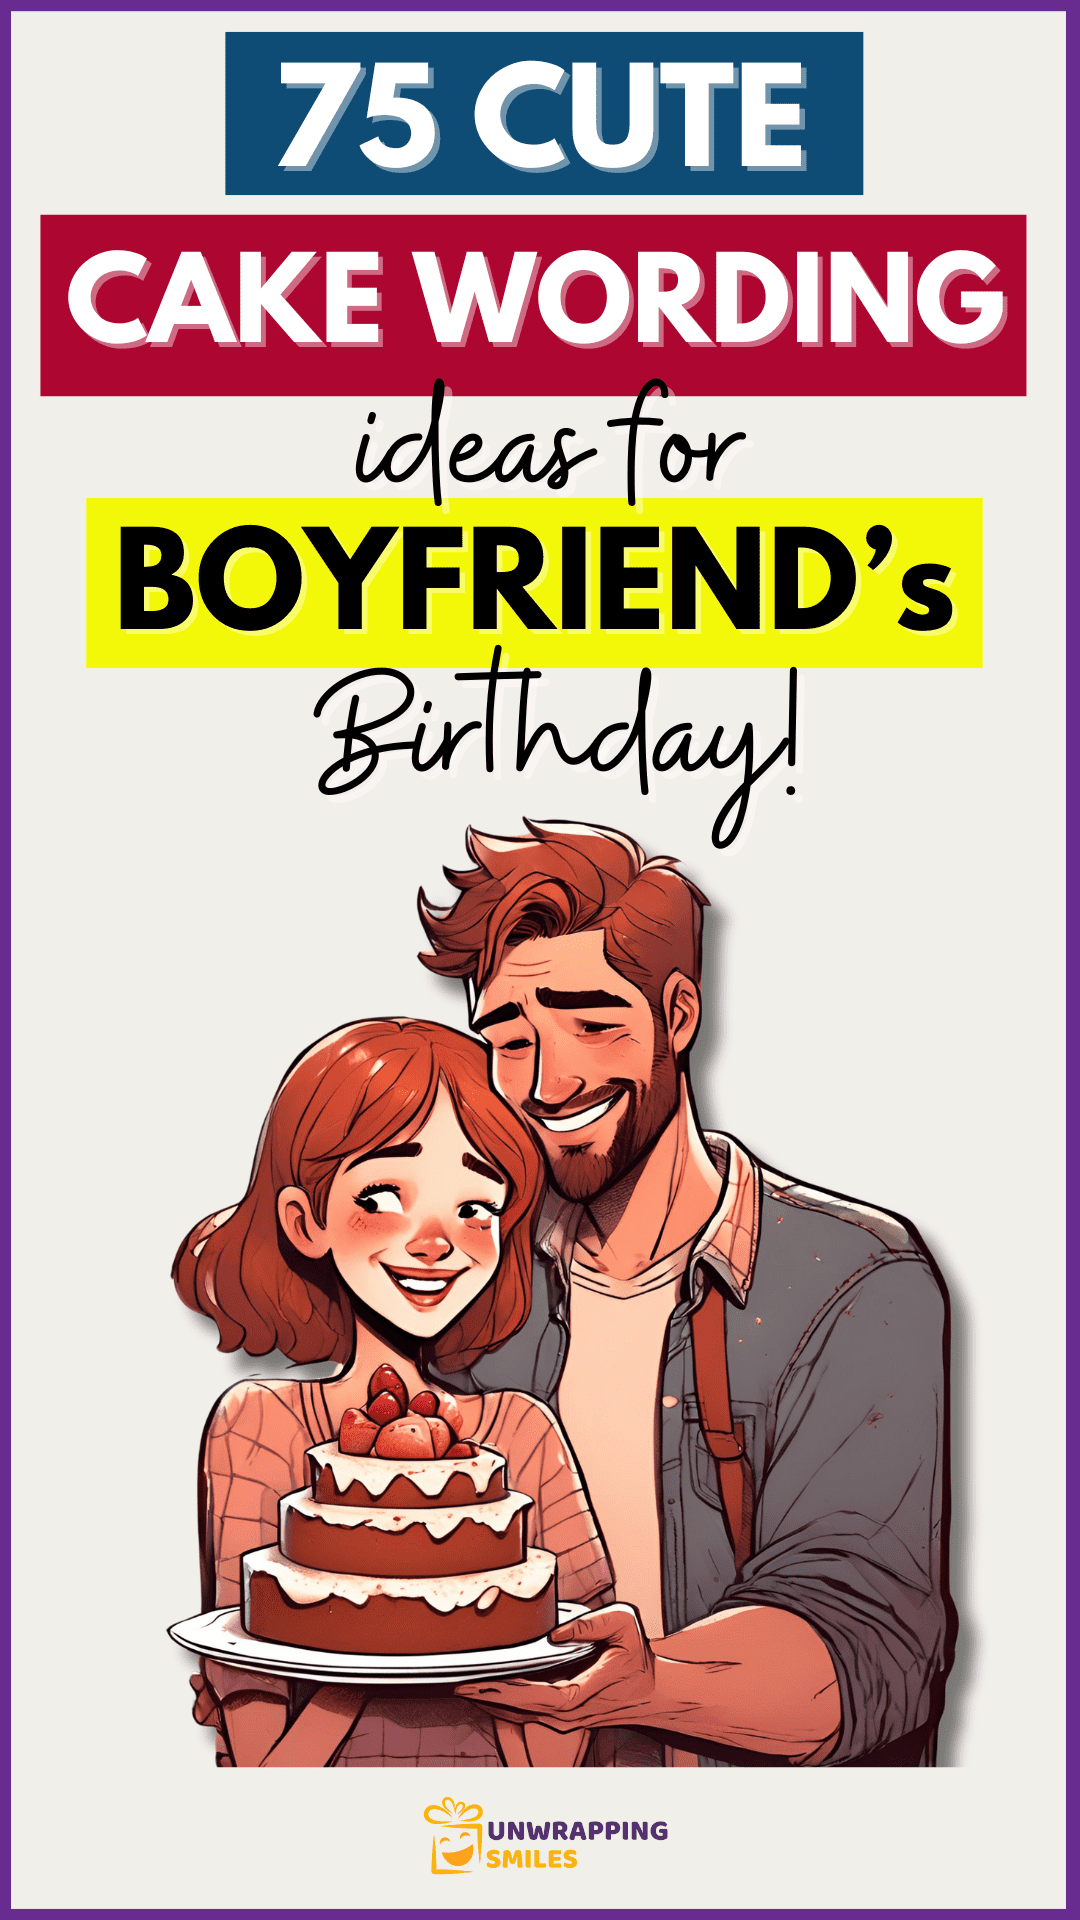 Cute Cake Wording Ideas For Boyfriend Birthday